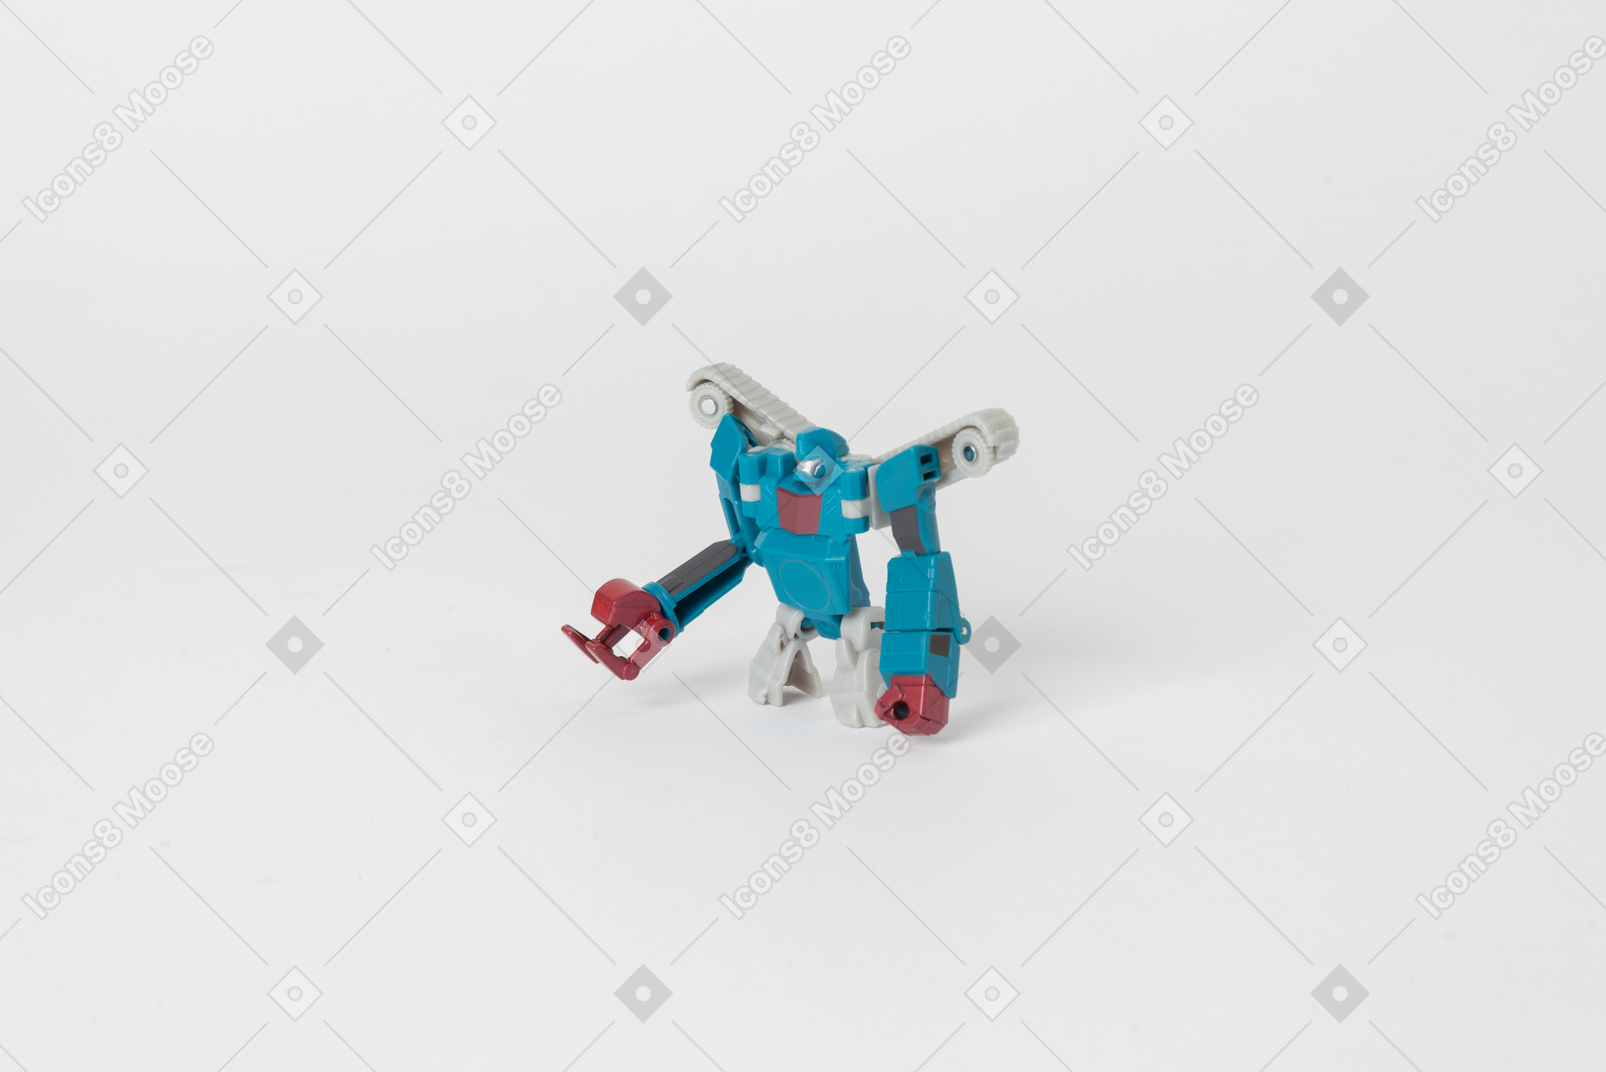 Une figurine de transformateur jouet de couleurs bleu et blanc se tenant contre un fond blanc